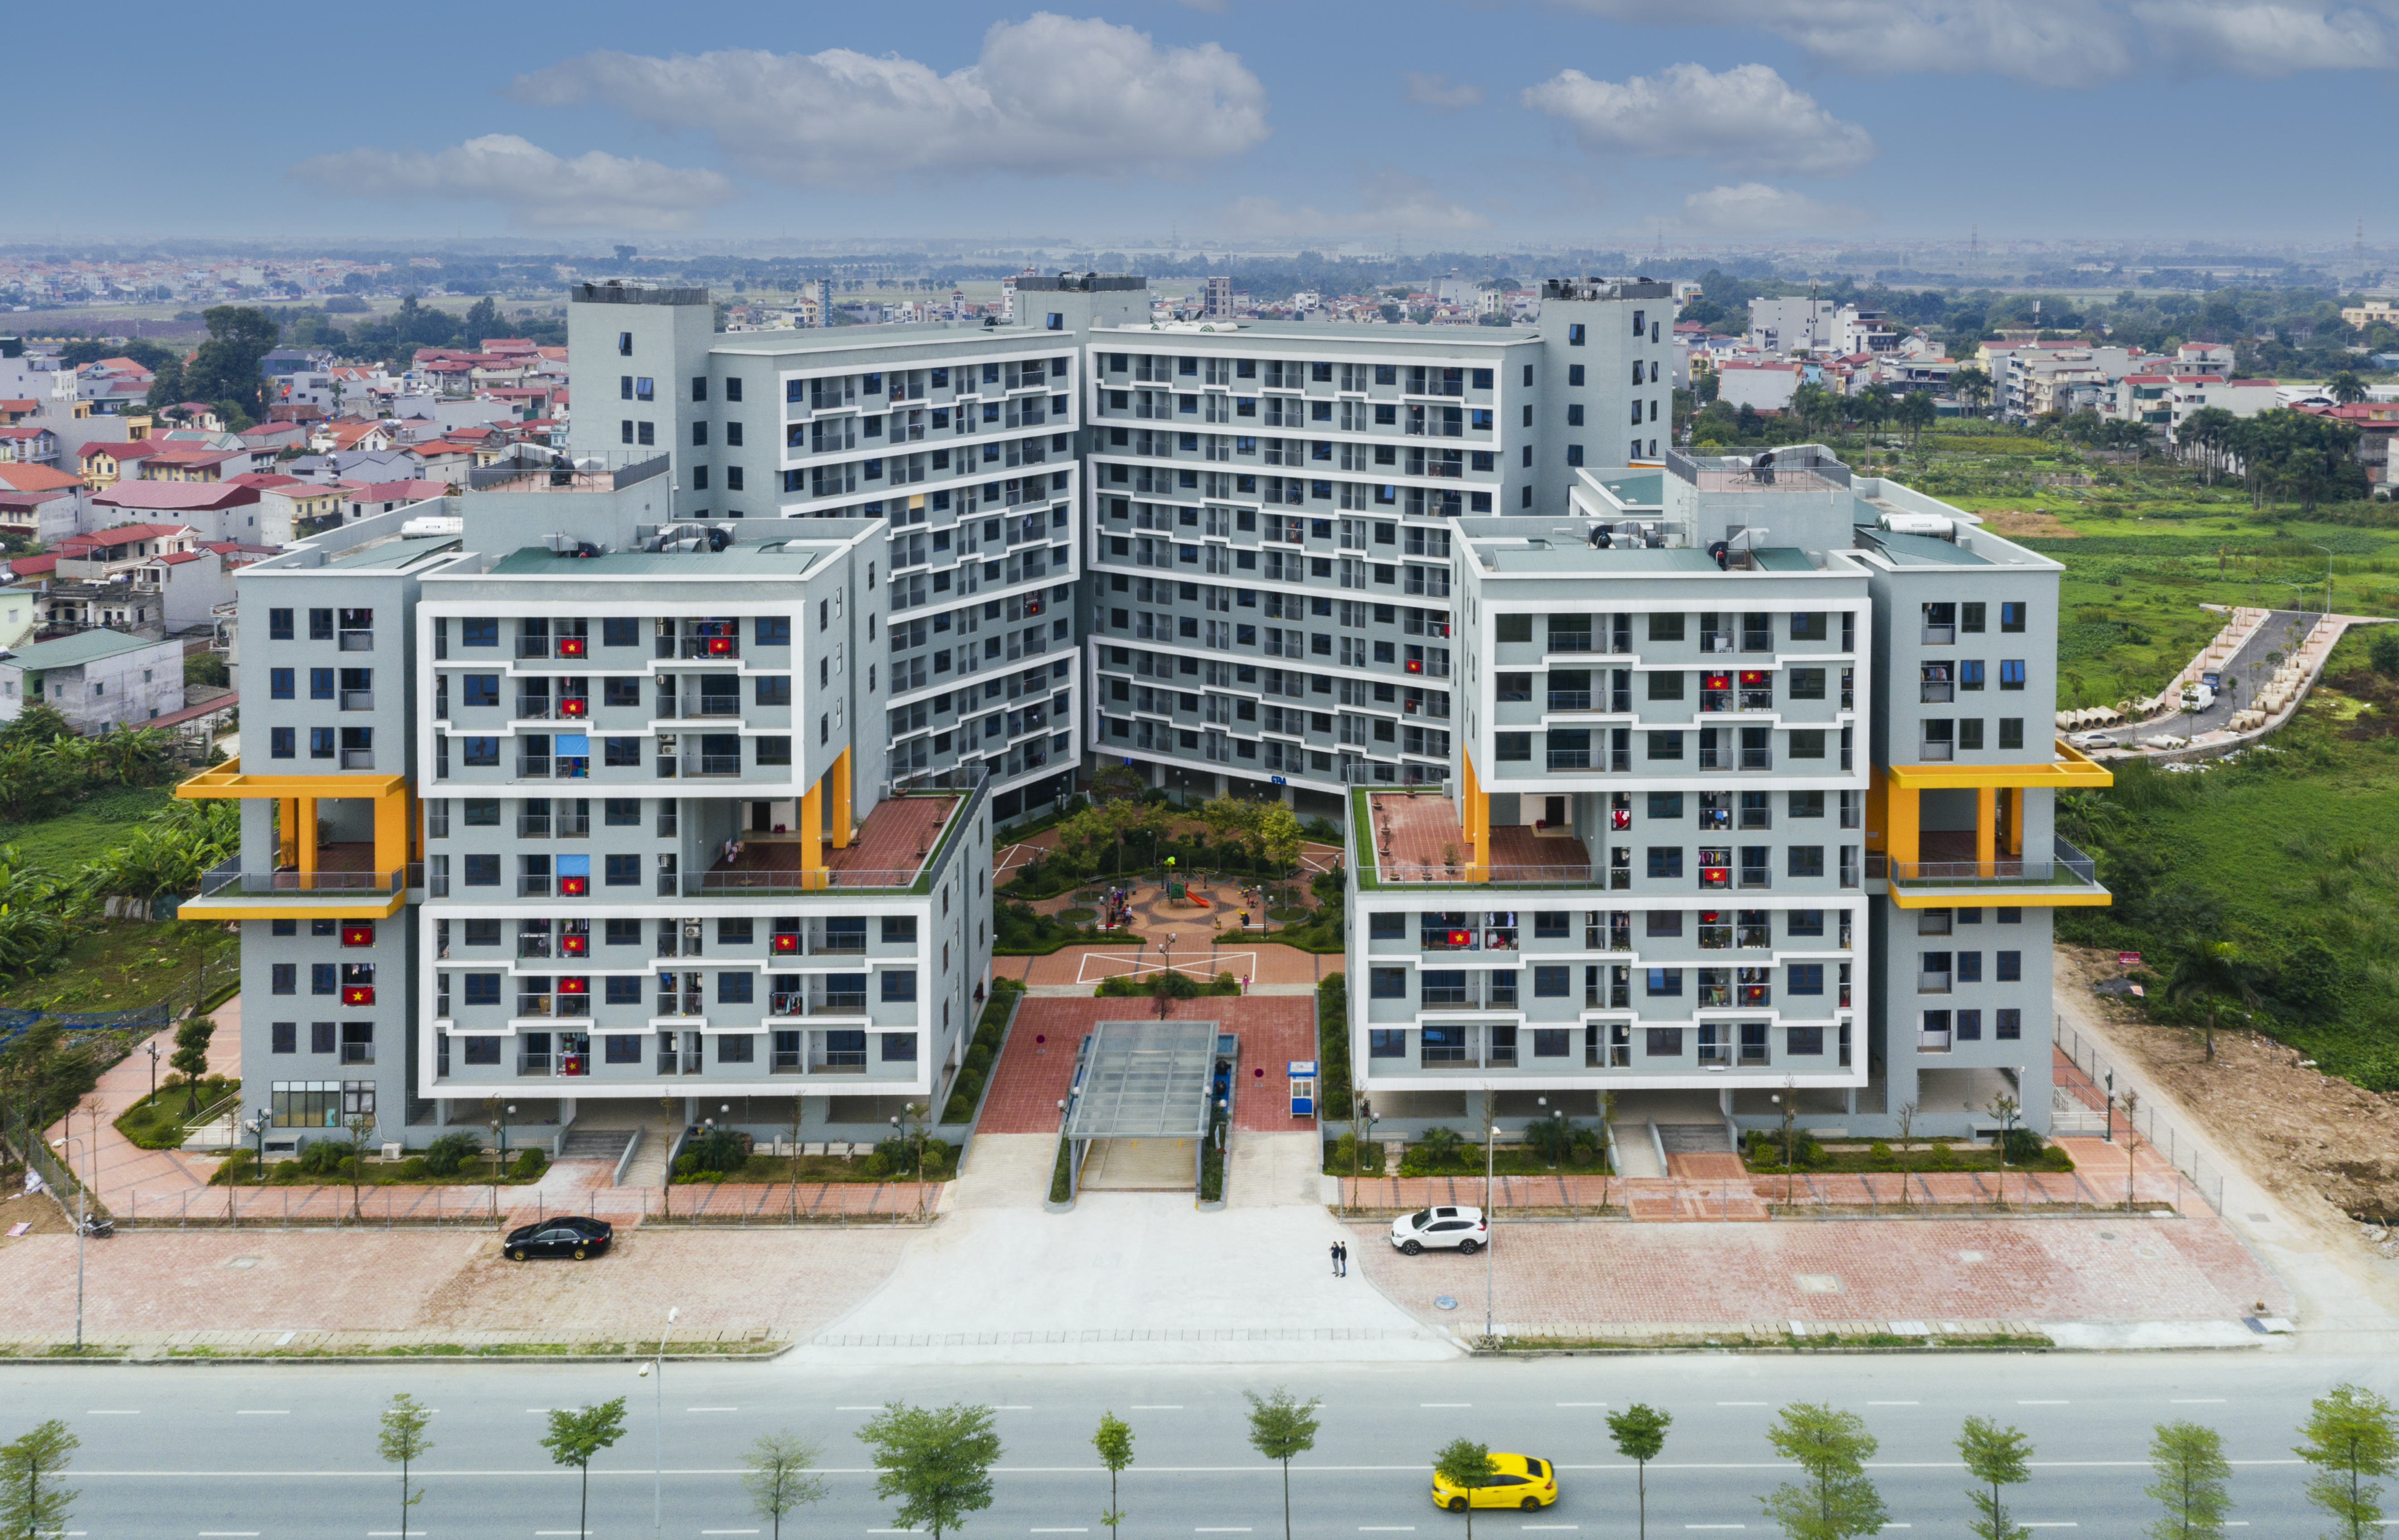  THÔNG BÁO: Kết quả bốc thăm Nhà ở xã hội Đợt 5 Tòa nhà CT4 Khu đô thị mới Kim Chung, Đông Anh, Hà Nội (Thăng Long Green City)